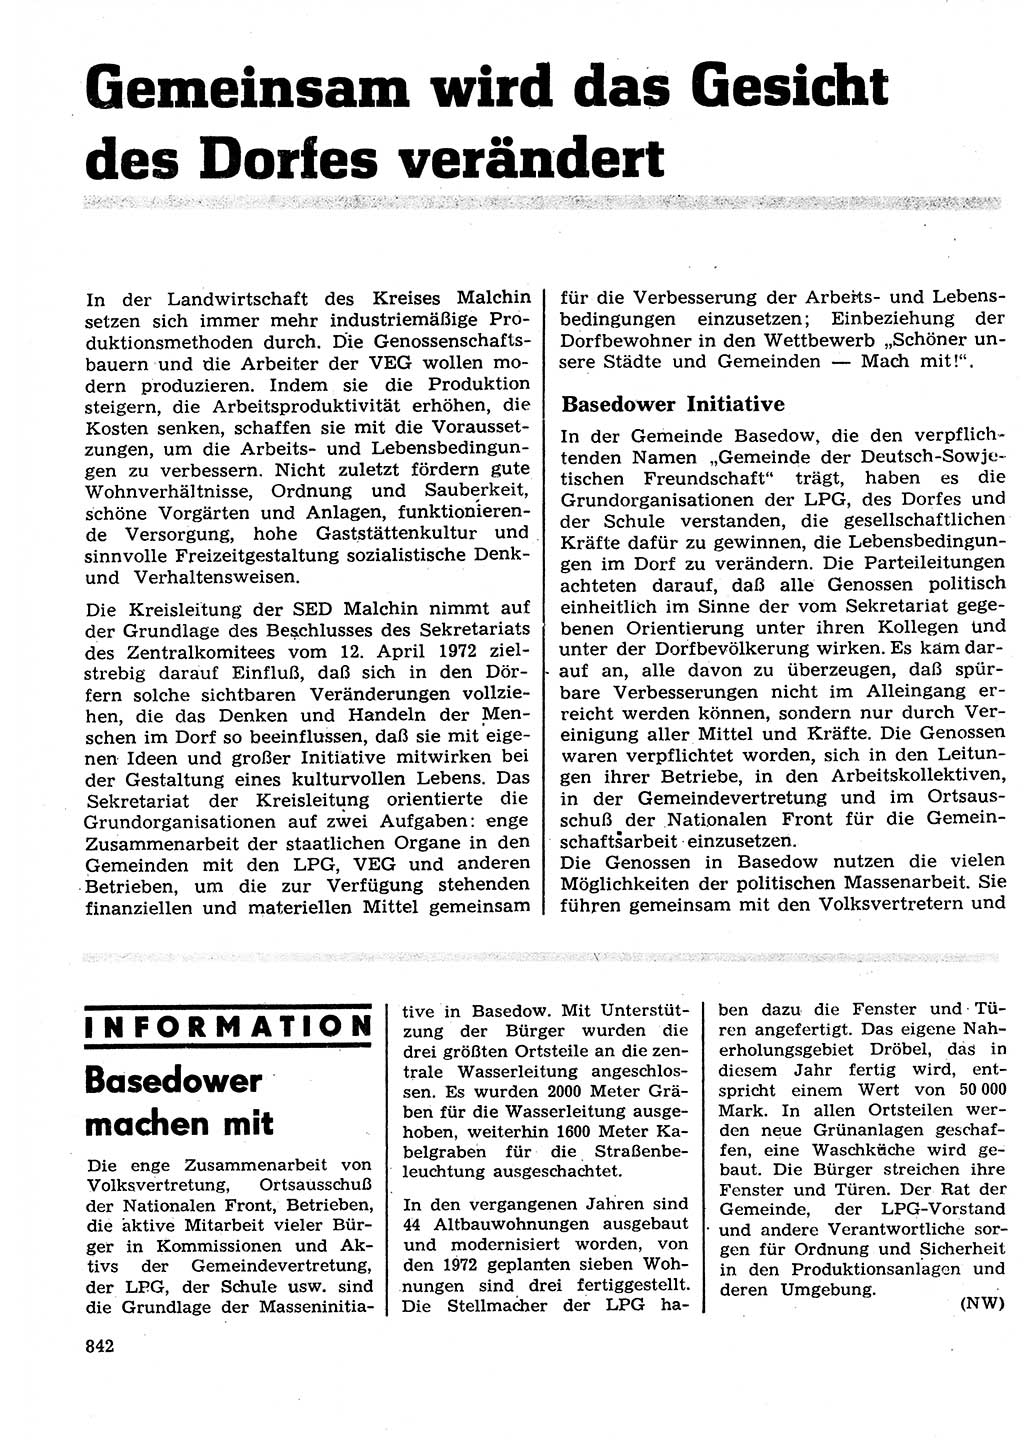 Neuer Weg (NW), Organ des Zentralkomitees (ZK) der SED (Sozialistische Einheitspartei Deutschlands) für Fragen des Parteilebens, 27. Jahrgang [Deutsche Demokratische Republik (DDR)] 1972, Seite 842 (NW ZK SED DDR 1972, S. 842)